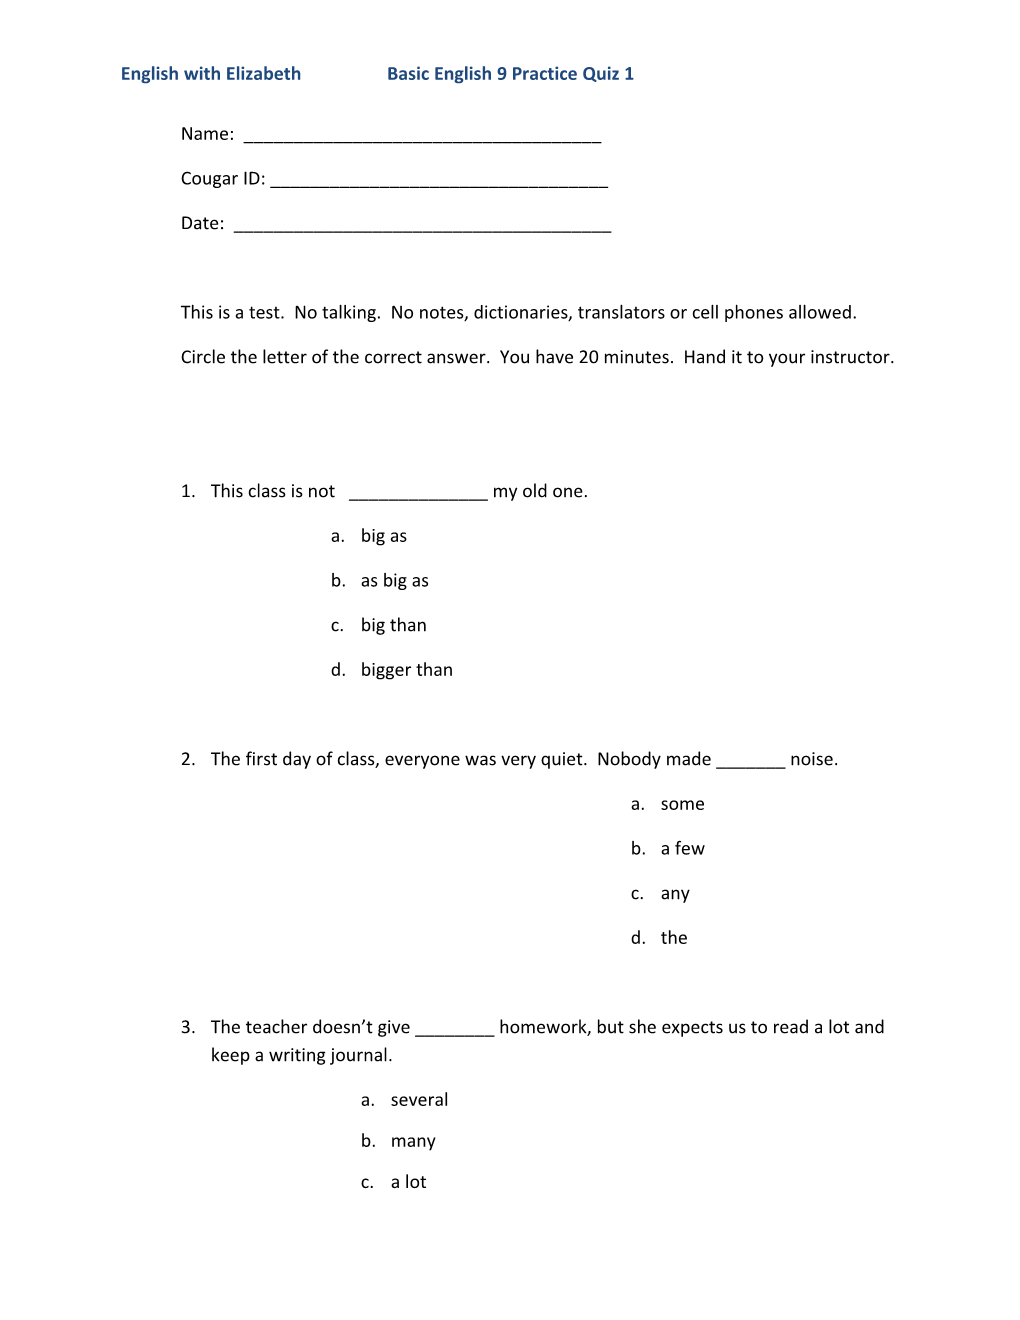 English with Elizabeth Basic English 9 Practice Quiz 1